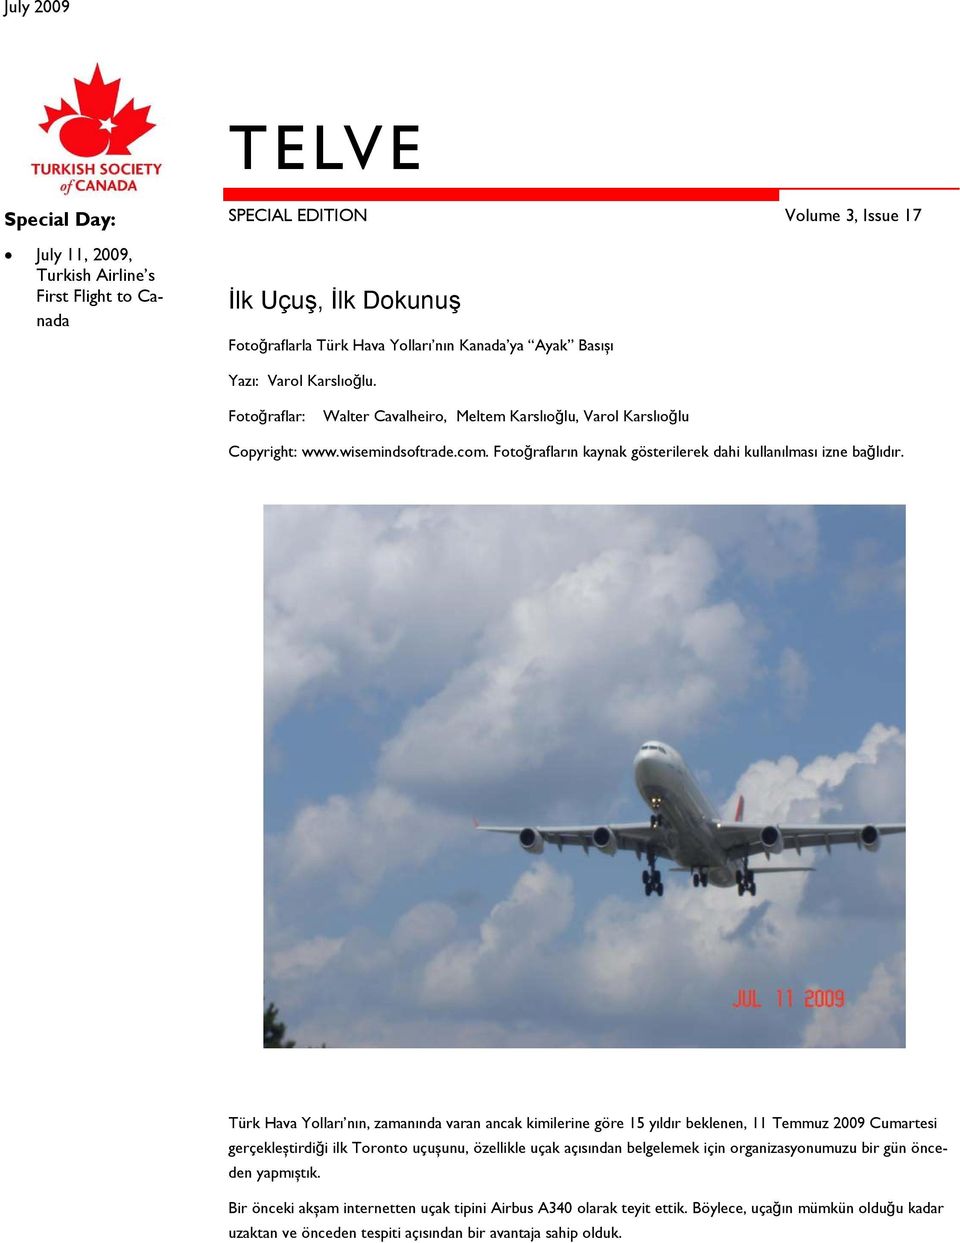 Türk Hava Yolları nın, zamanında varan ancak kimilerine göre 15 yıldır beklenen, 11 Temmuz 2009 Cumartesi gerçekleștirdiği ilk Toronto uçușunu, özellikle uçak açısından belgelemek için